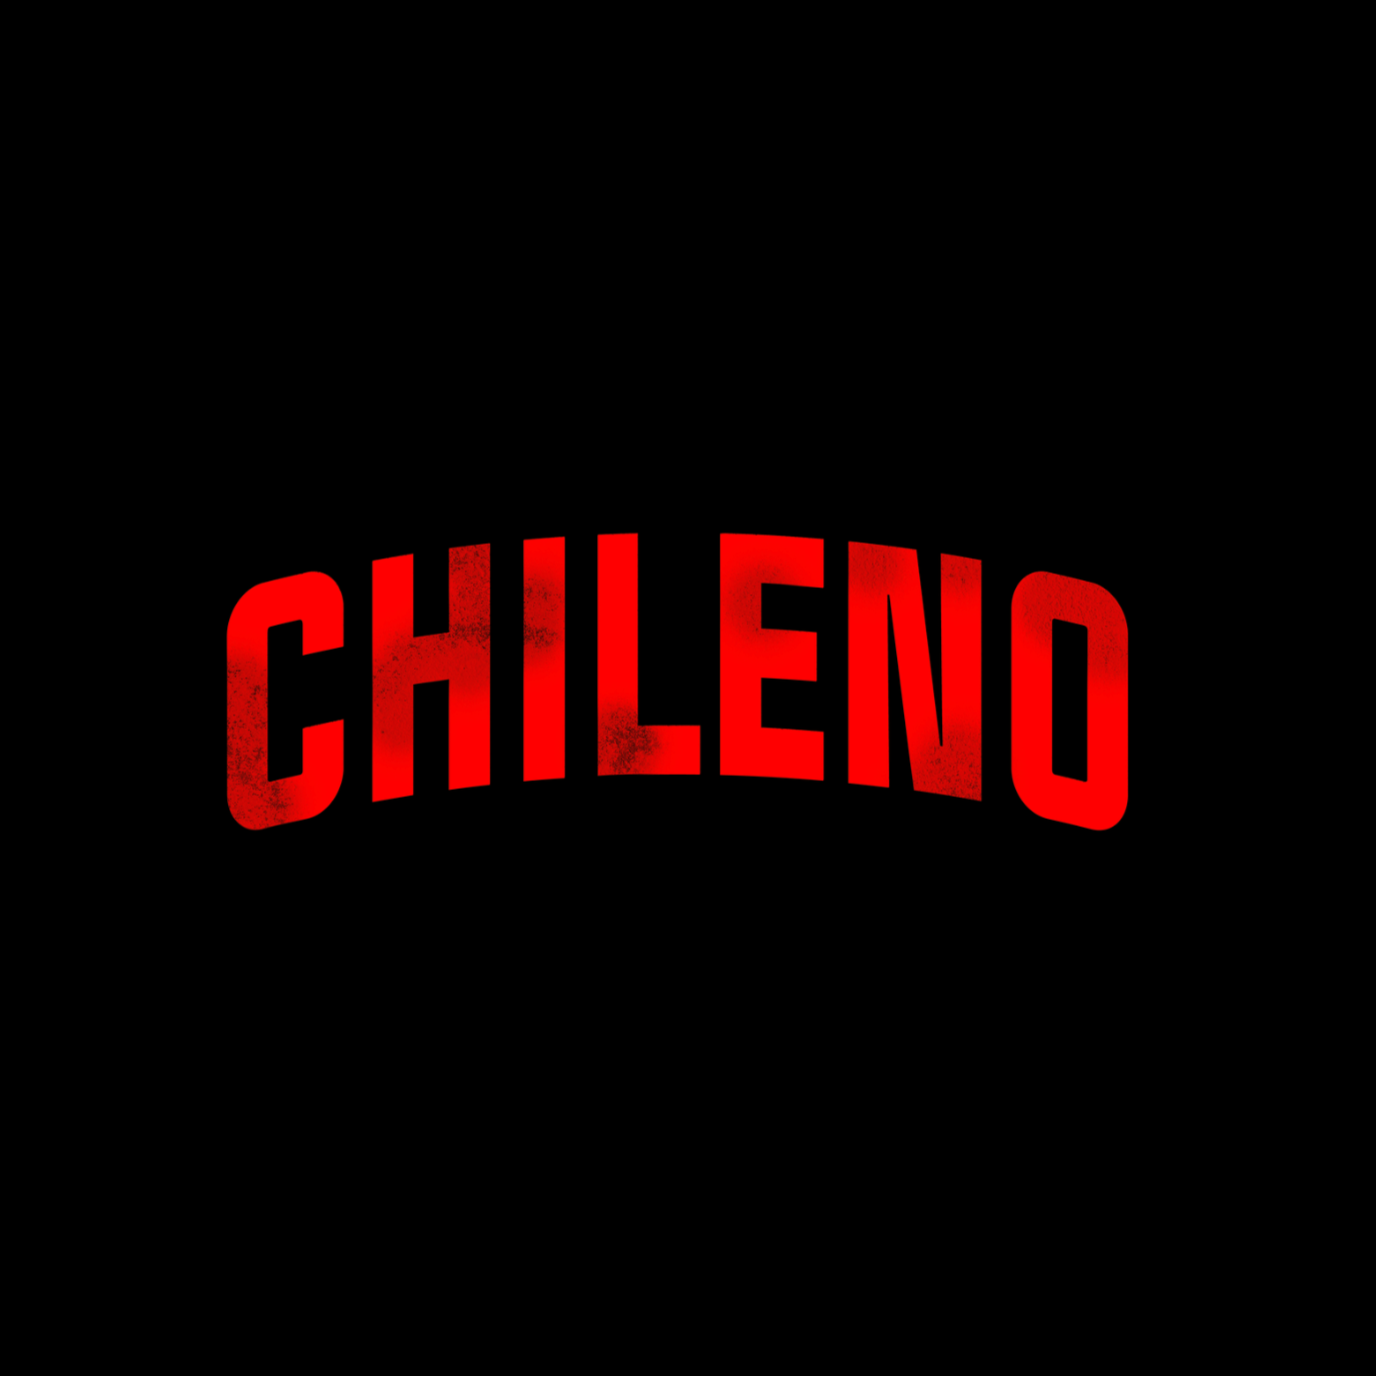 🇨🇱 Chileno